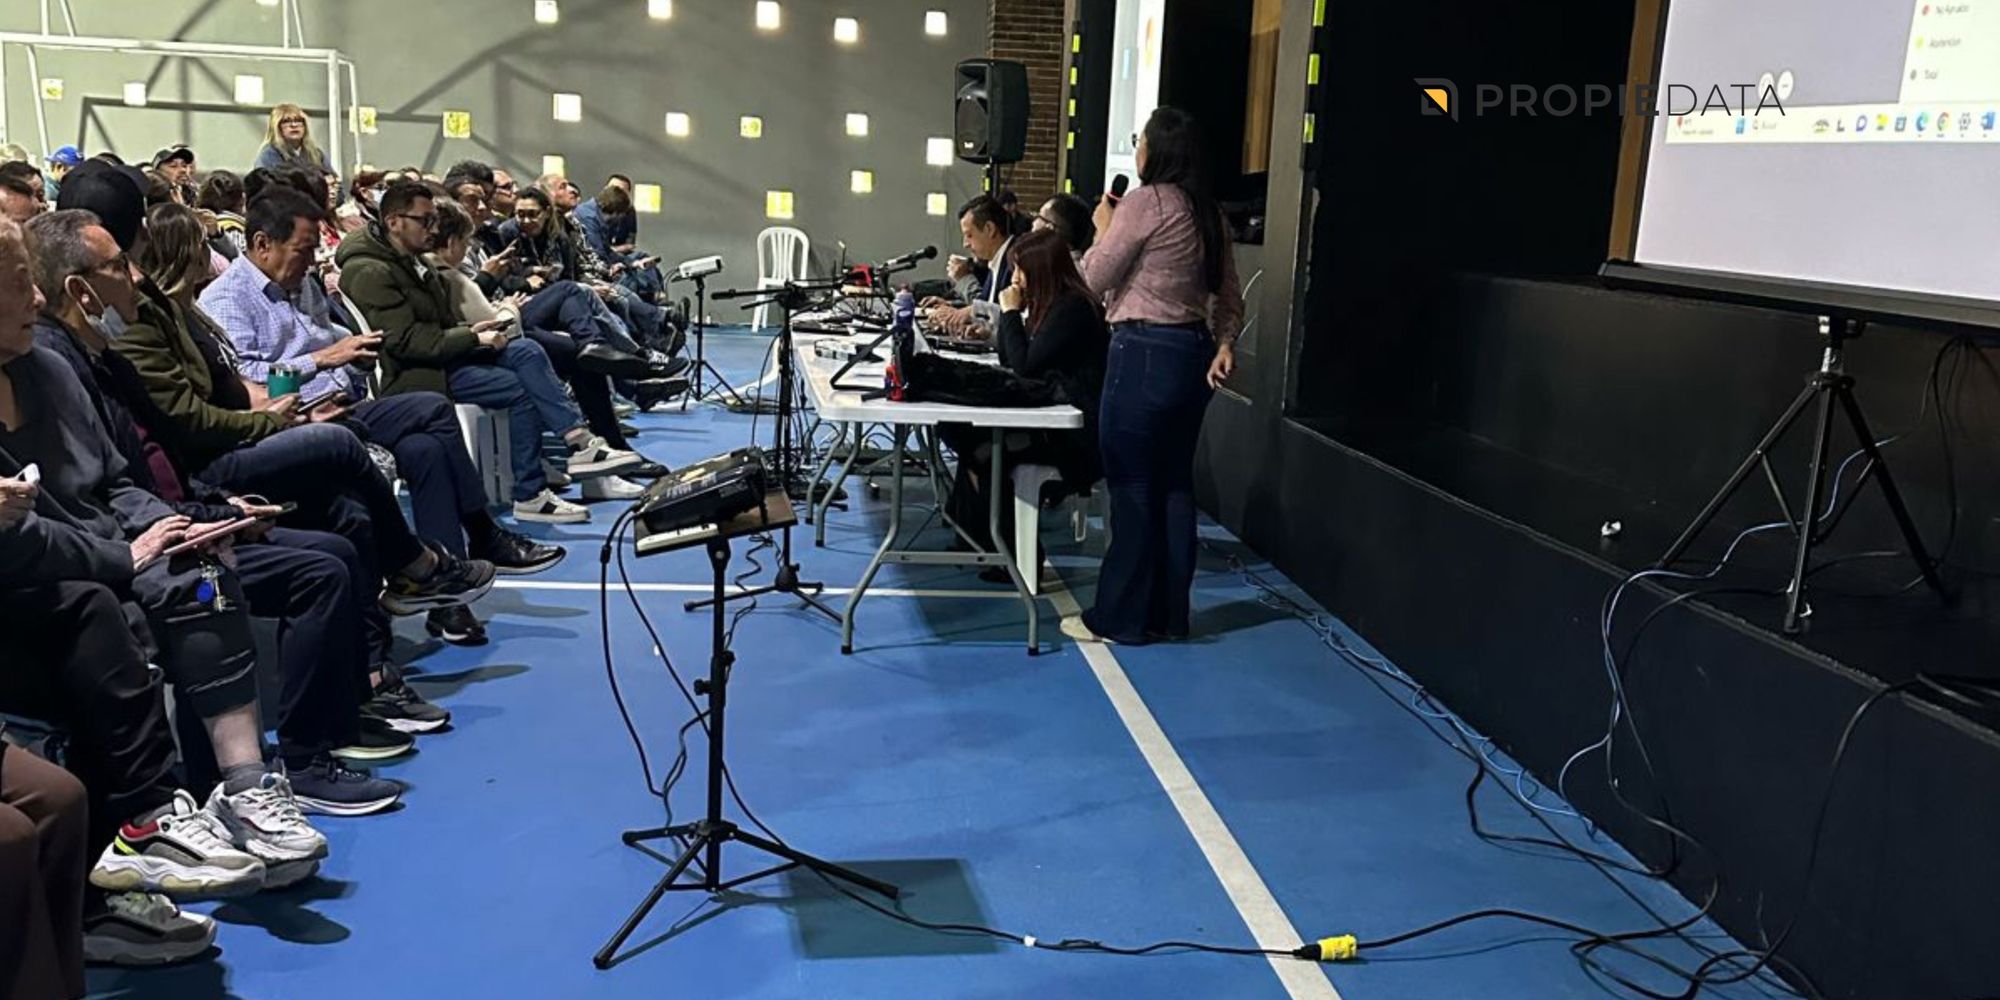 Éxito Destacado: Asamblea presencial de Propiedata en Alejandría Azimut con un Quórum del 84.8%